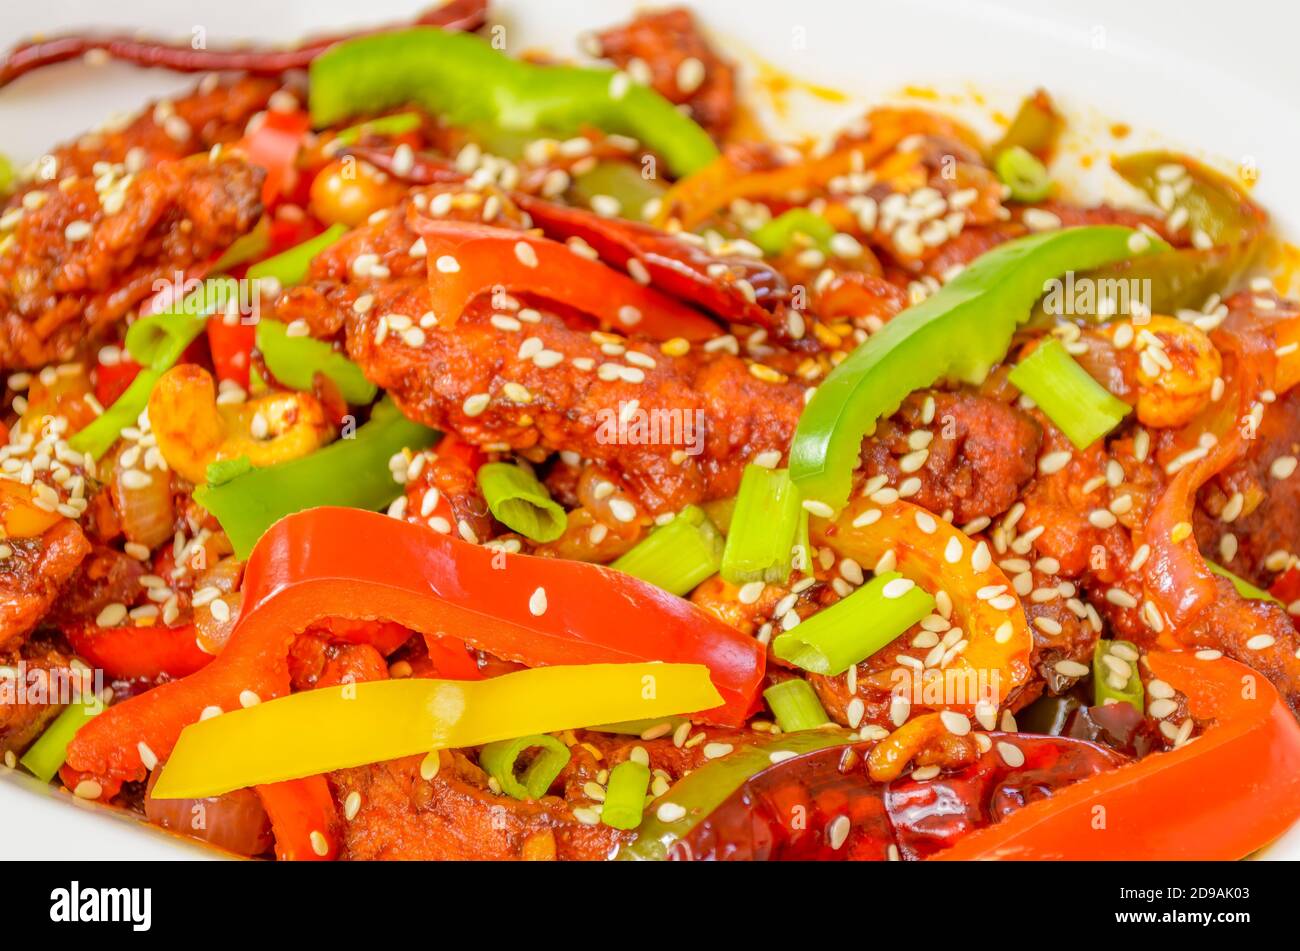 Gros plan sur un plat chinois, poulet Dragon maison avec poivrons dans un bol. Photographie alimentaire. Banque D'Images